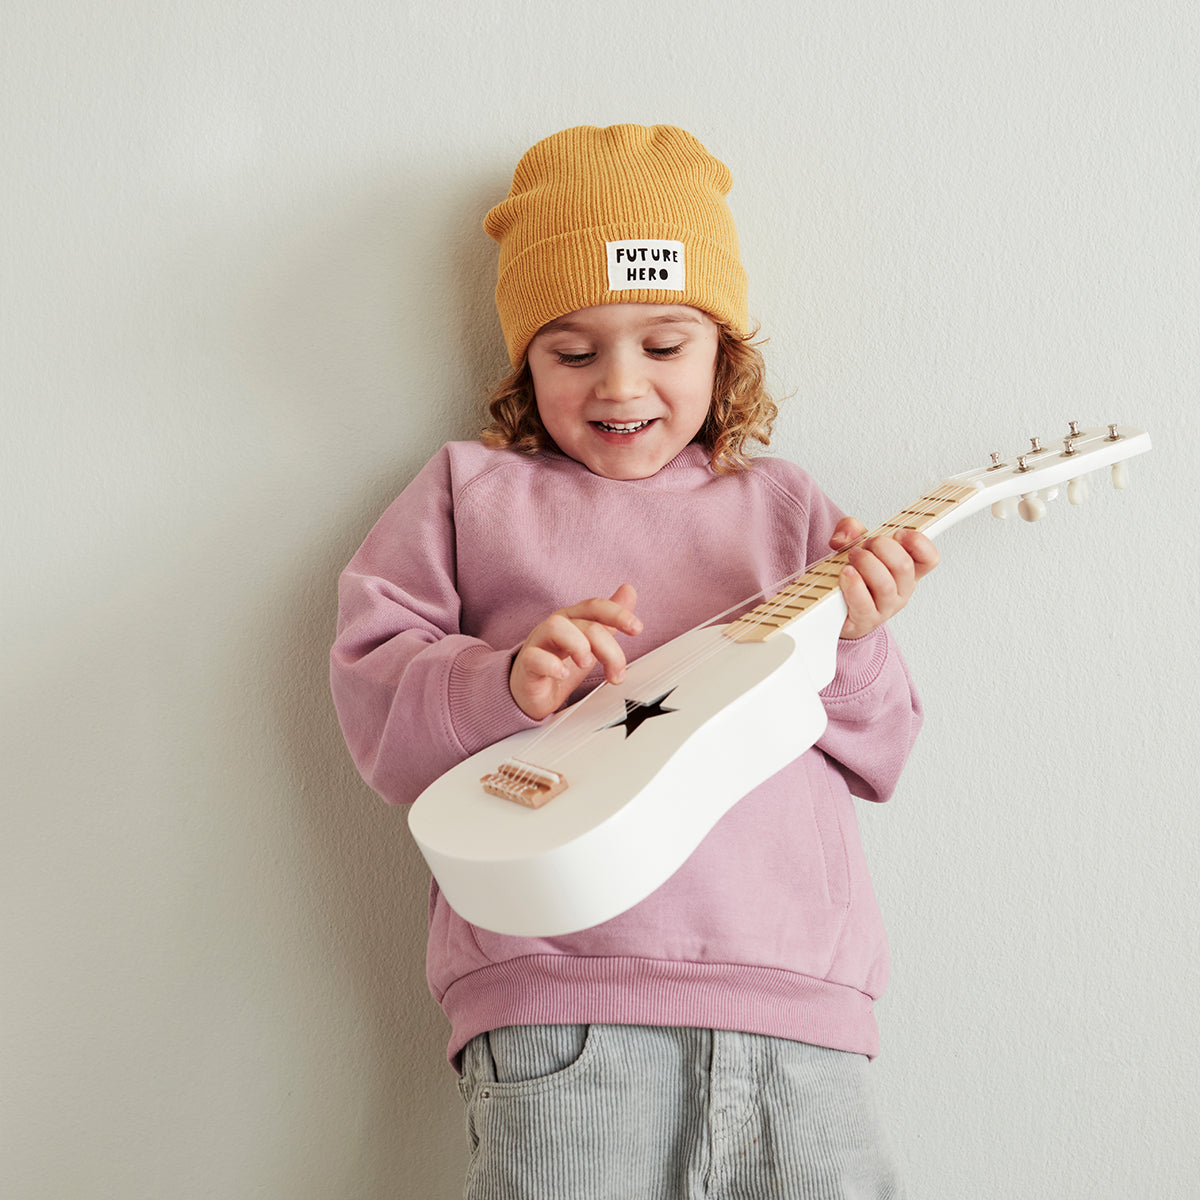 De Kid's Concept gitaar wit gaat jouw kindje heel erg blij maken. Alle kindjes houden van muziek maken en deze gitaar is net echt! De kindergitaar heeft een super leuk design. VanZus.